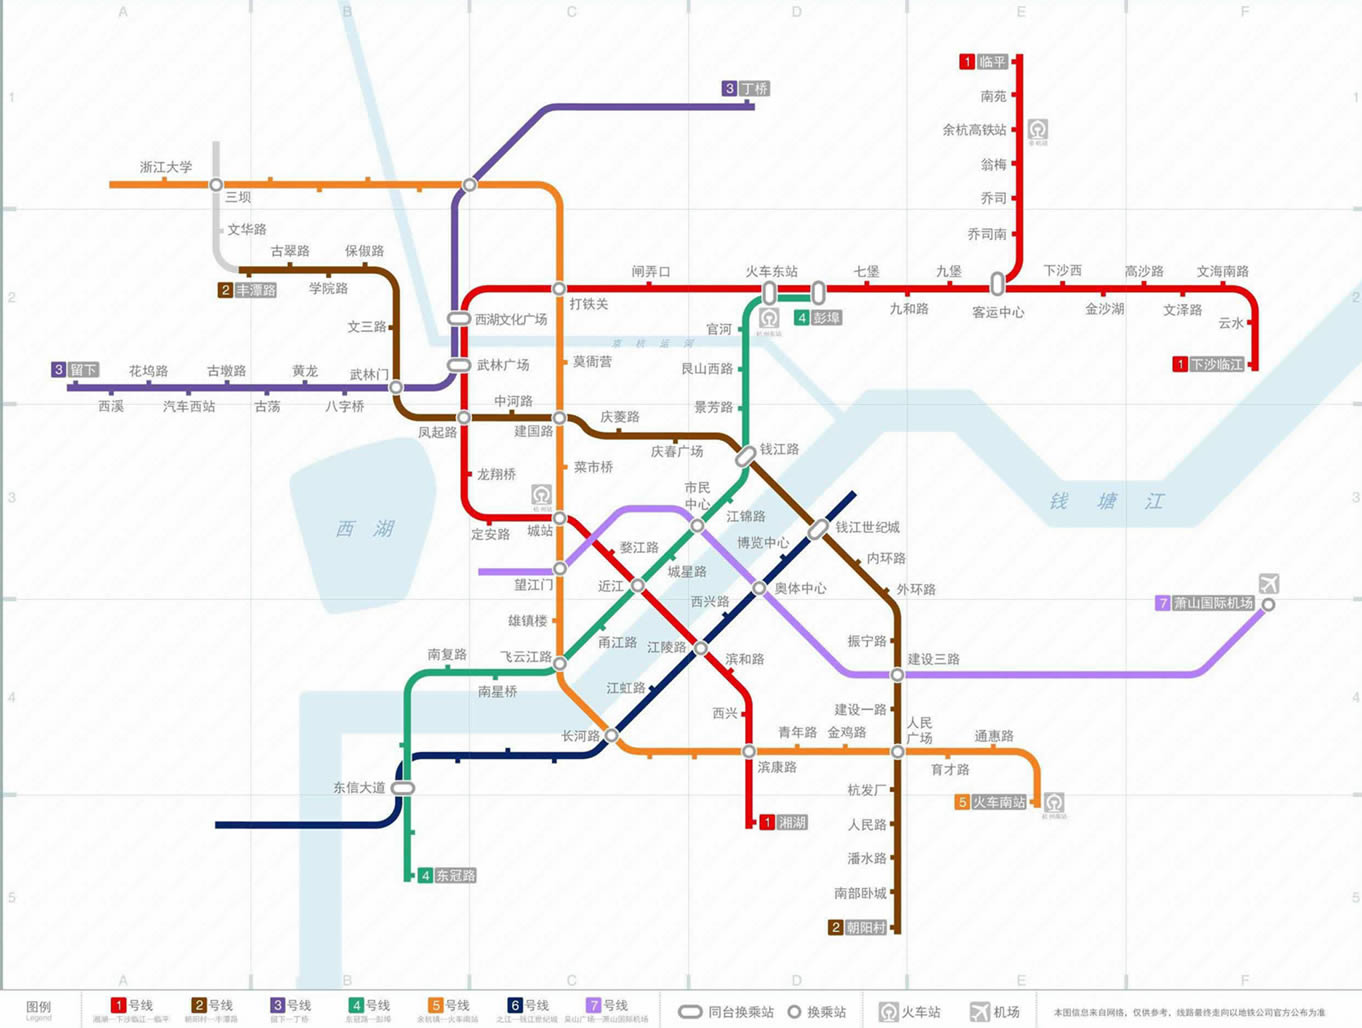 杭州地铁规划图(来源:杭州地铁网)